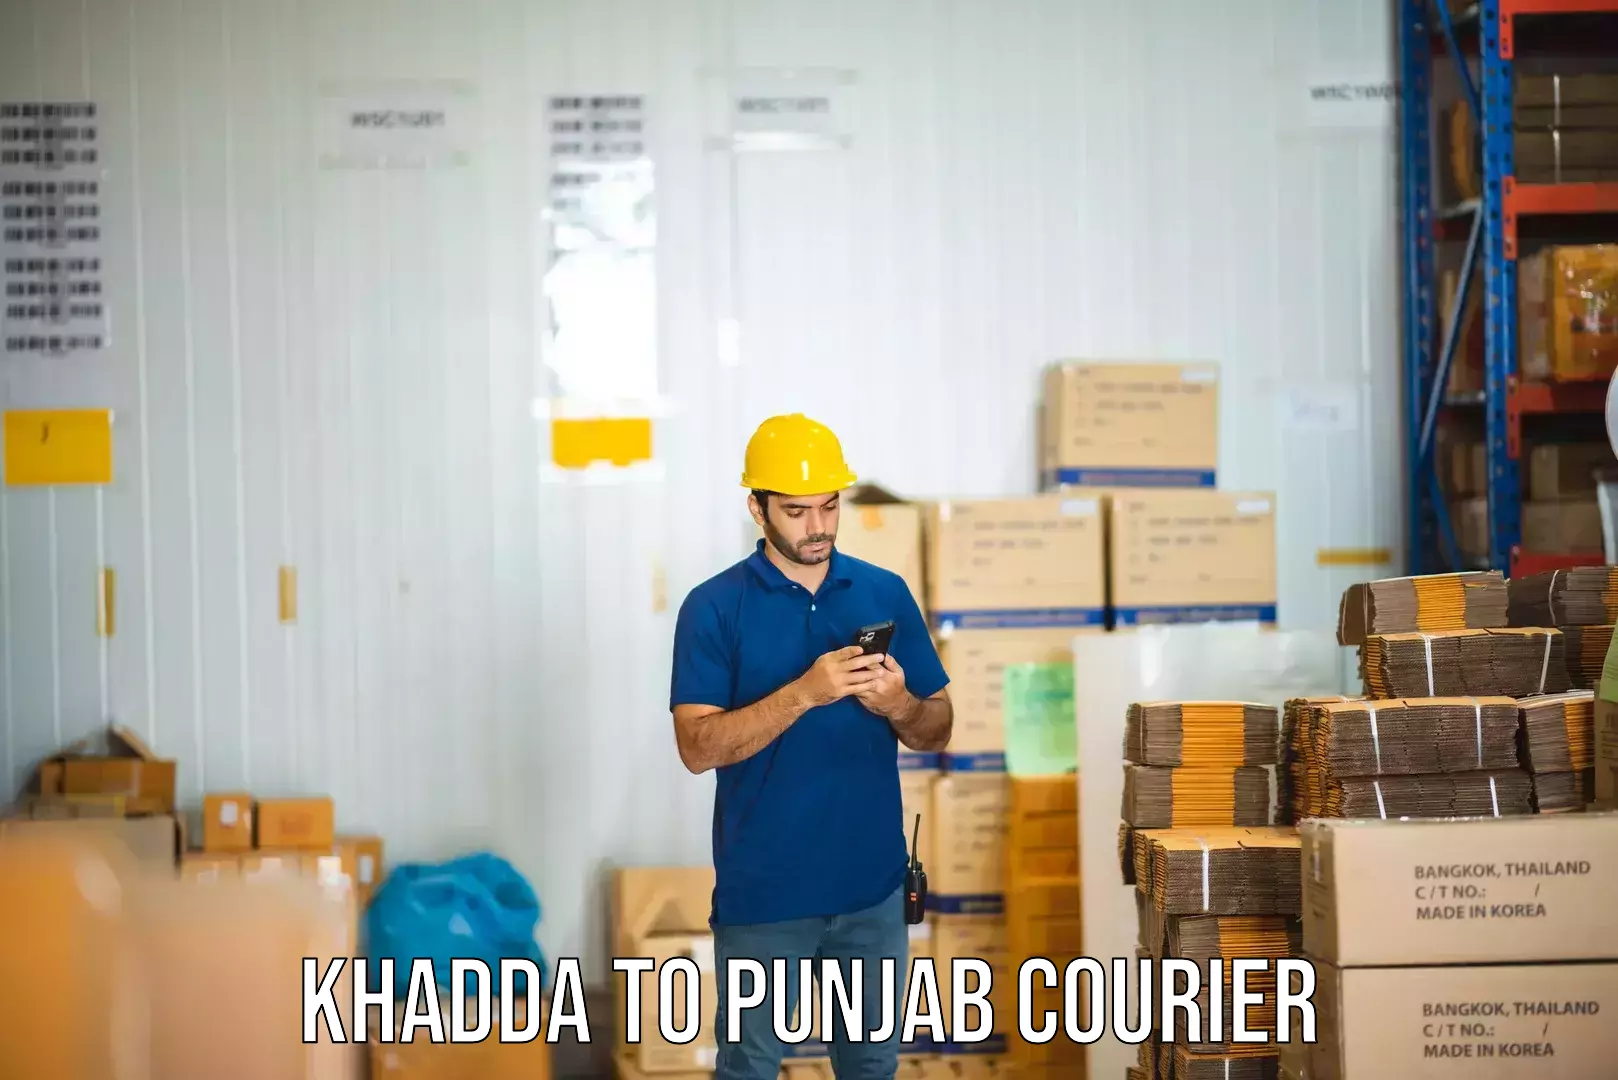 Enhanced delivery experience Khadda to Nawanshahr